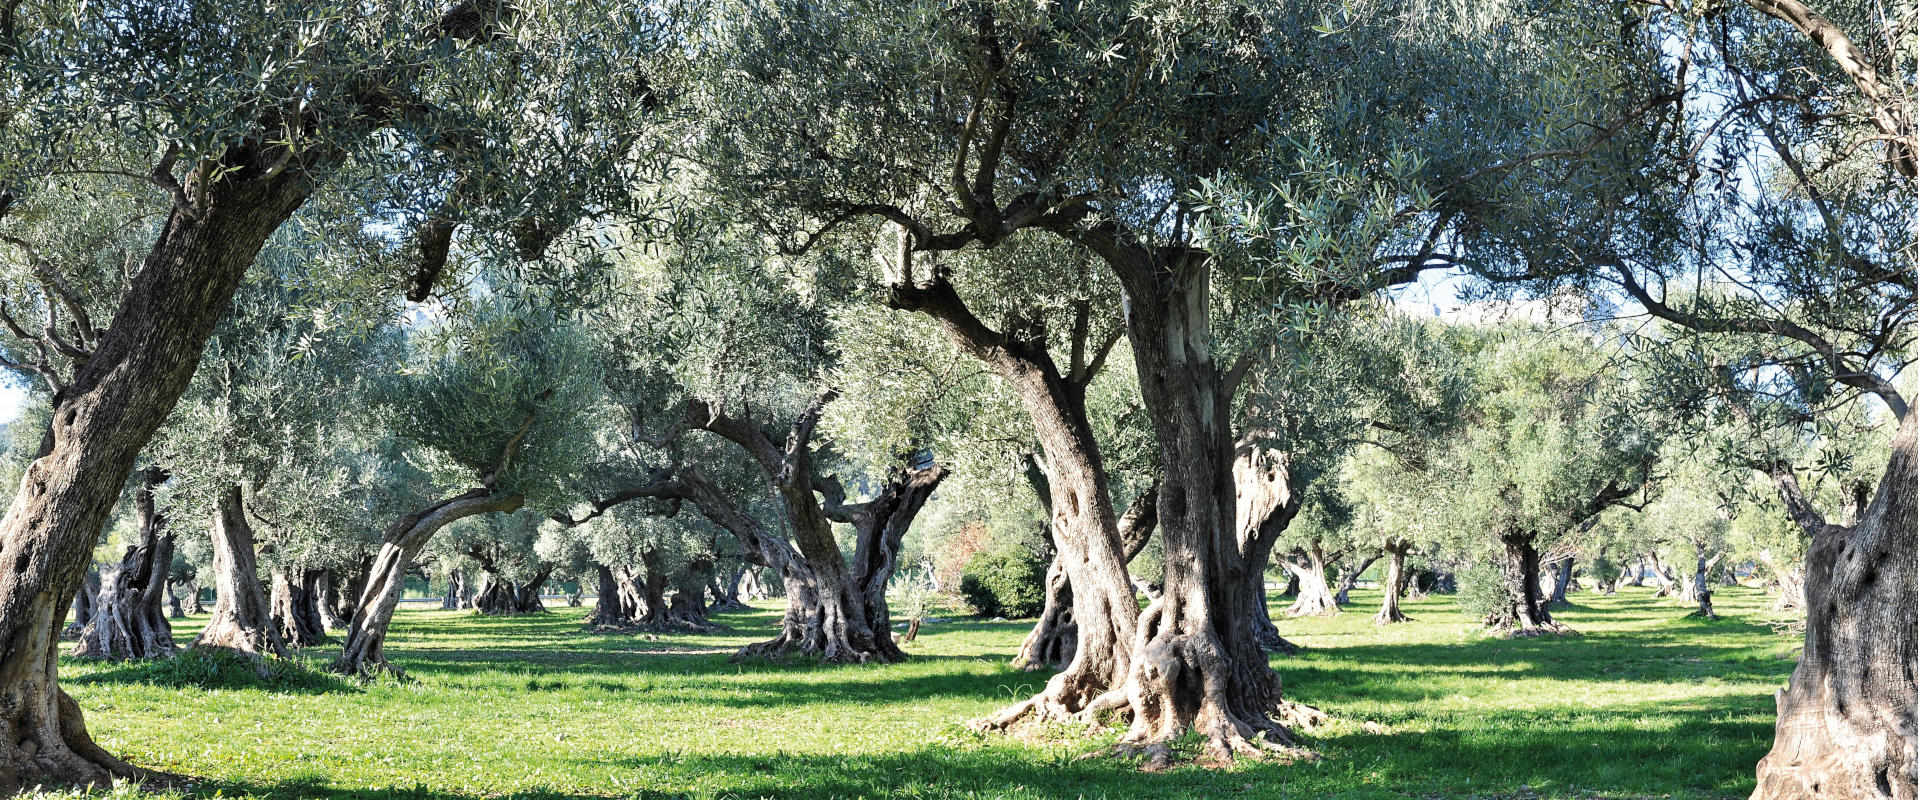 Oliveto con olive secolari